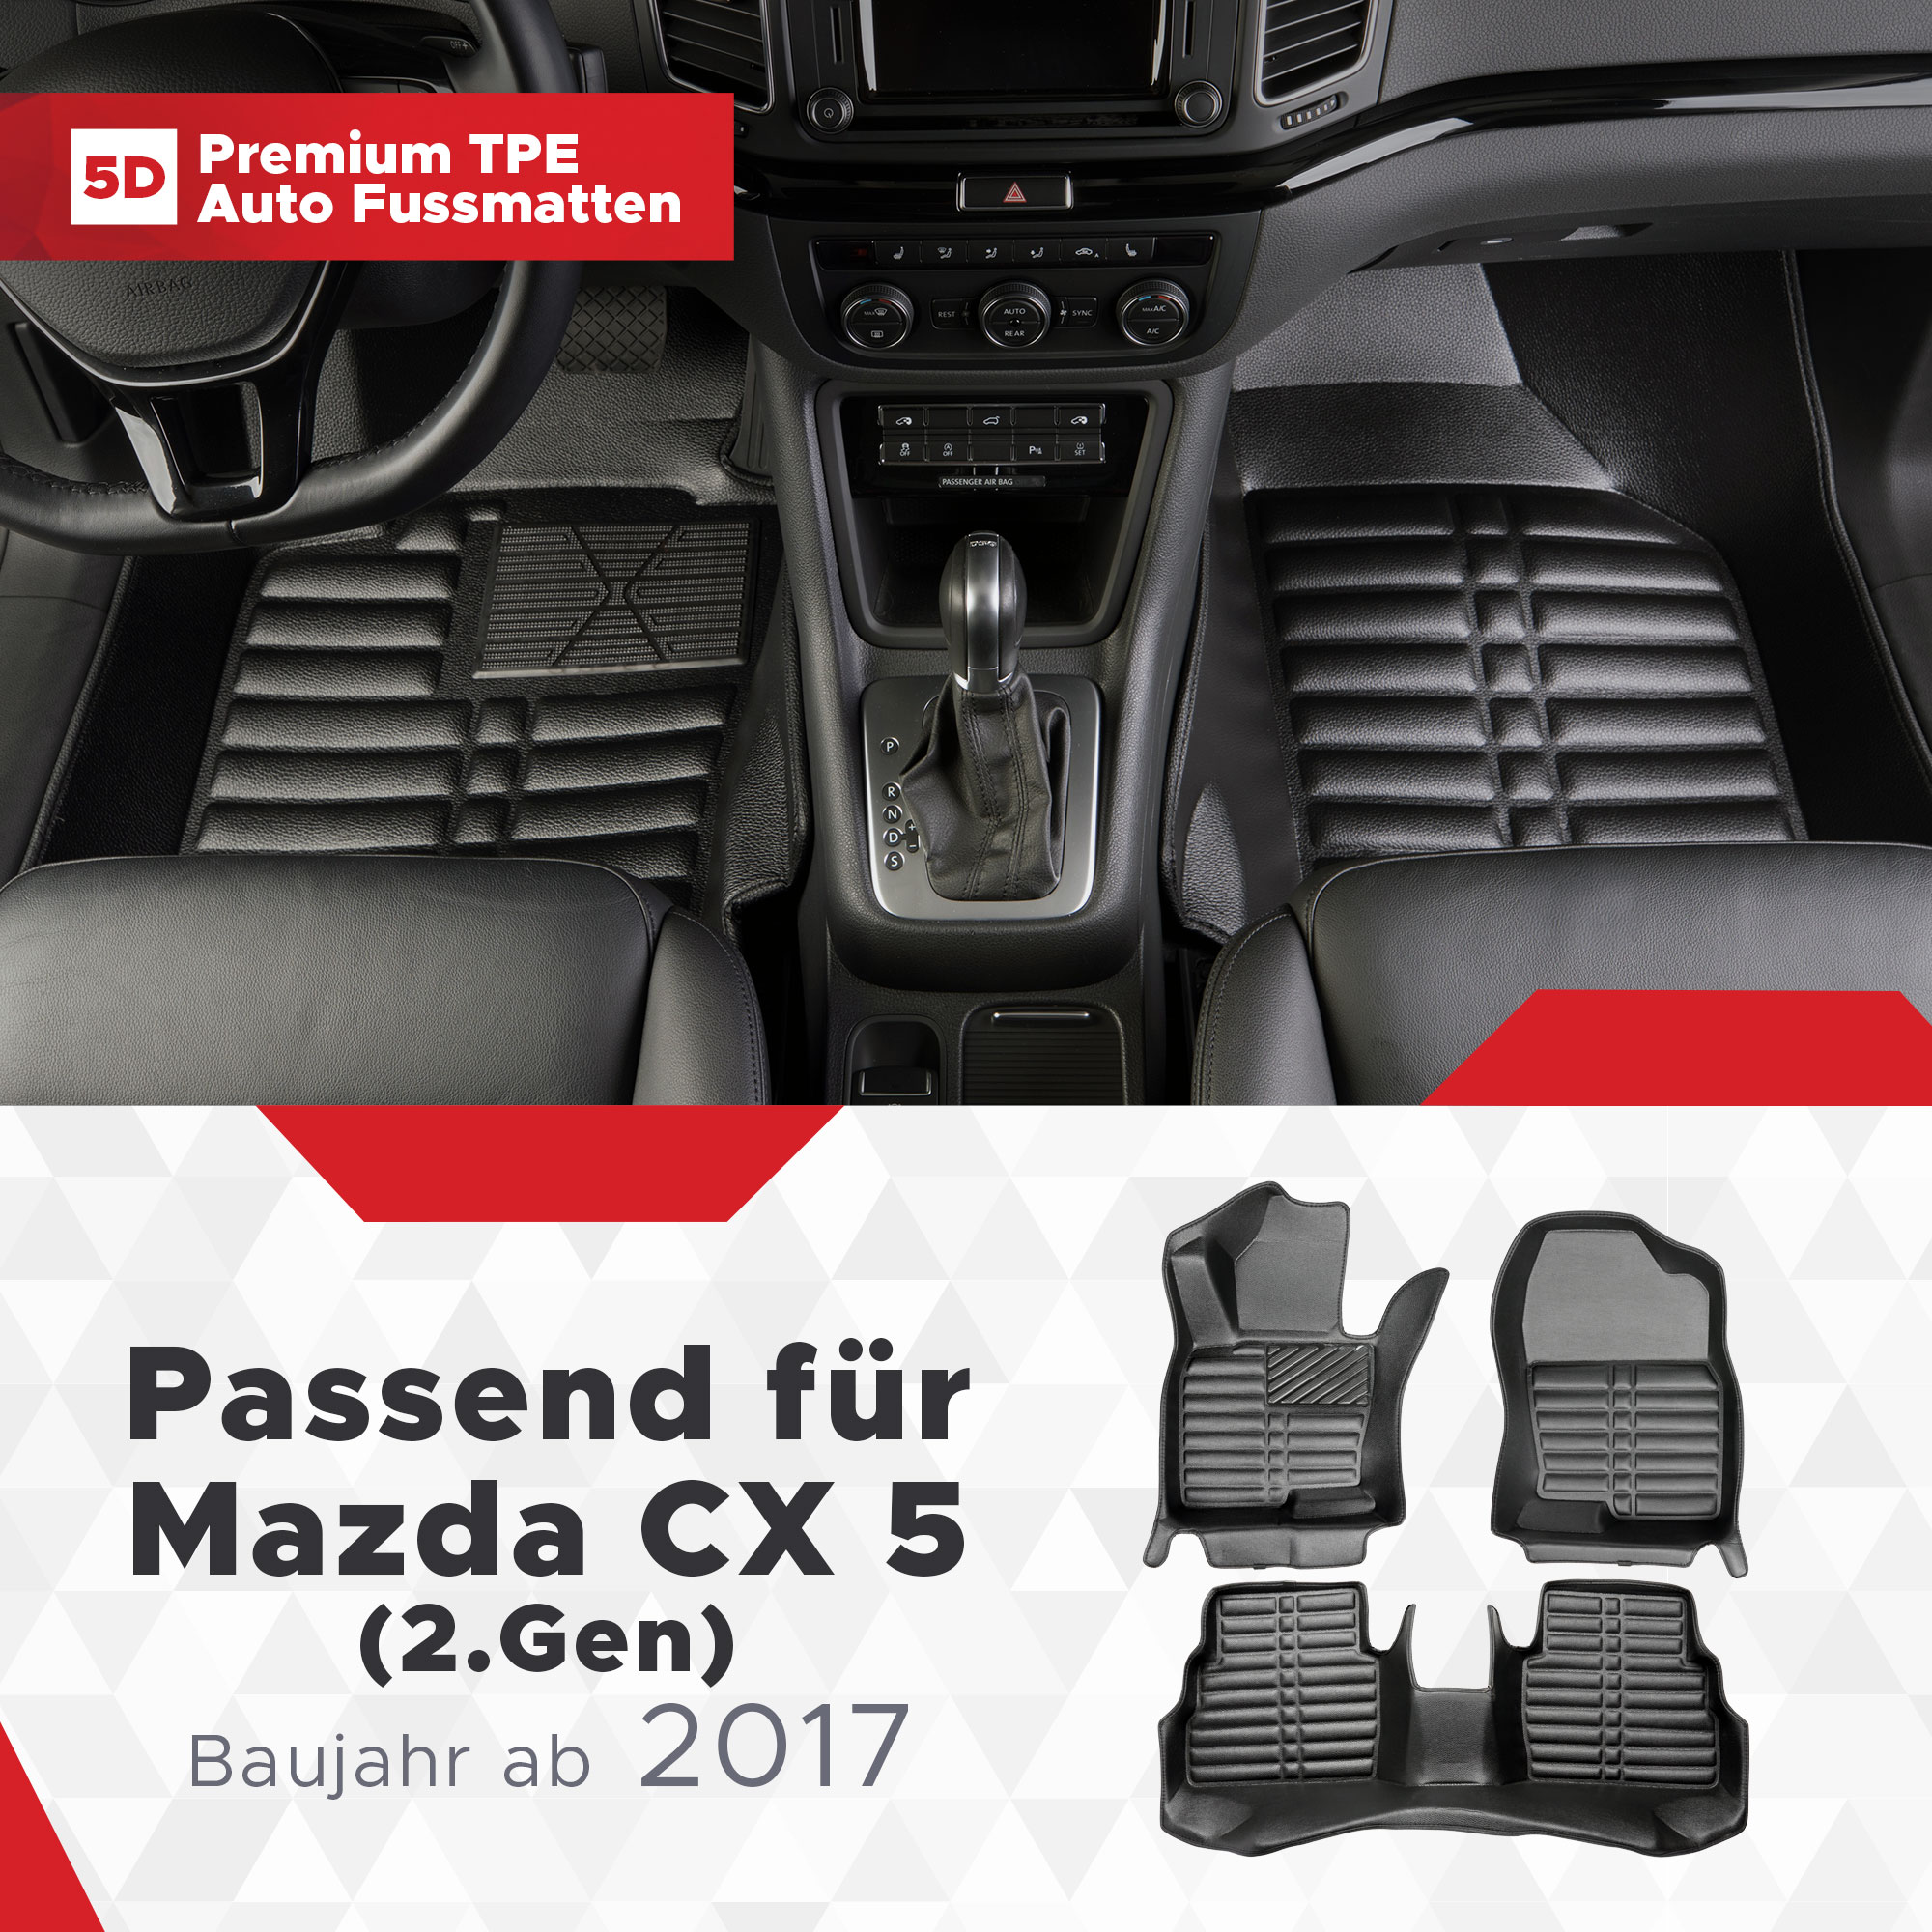 2017 Fussmatten ab 5 5D CX Mazda TPE Bj (2.Gen)